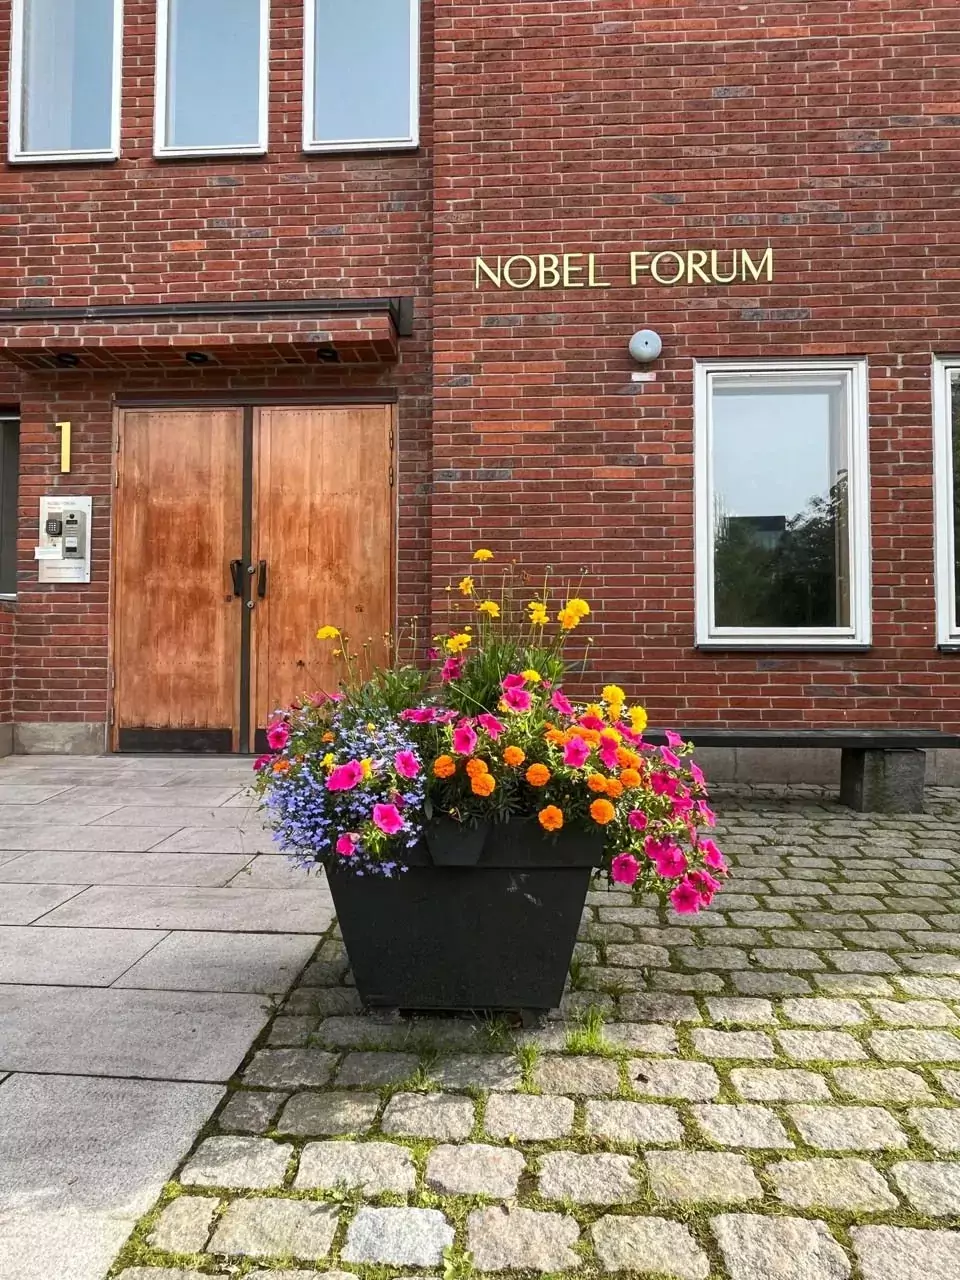 Nobel Forum at Karolinska Institutet